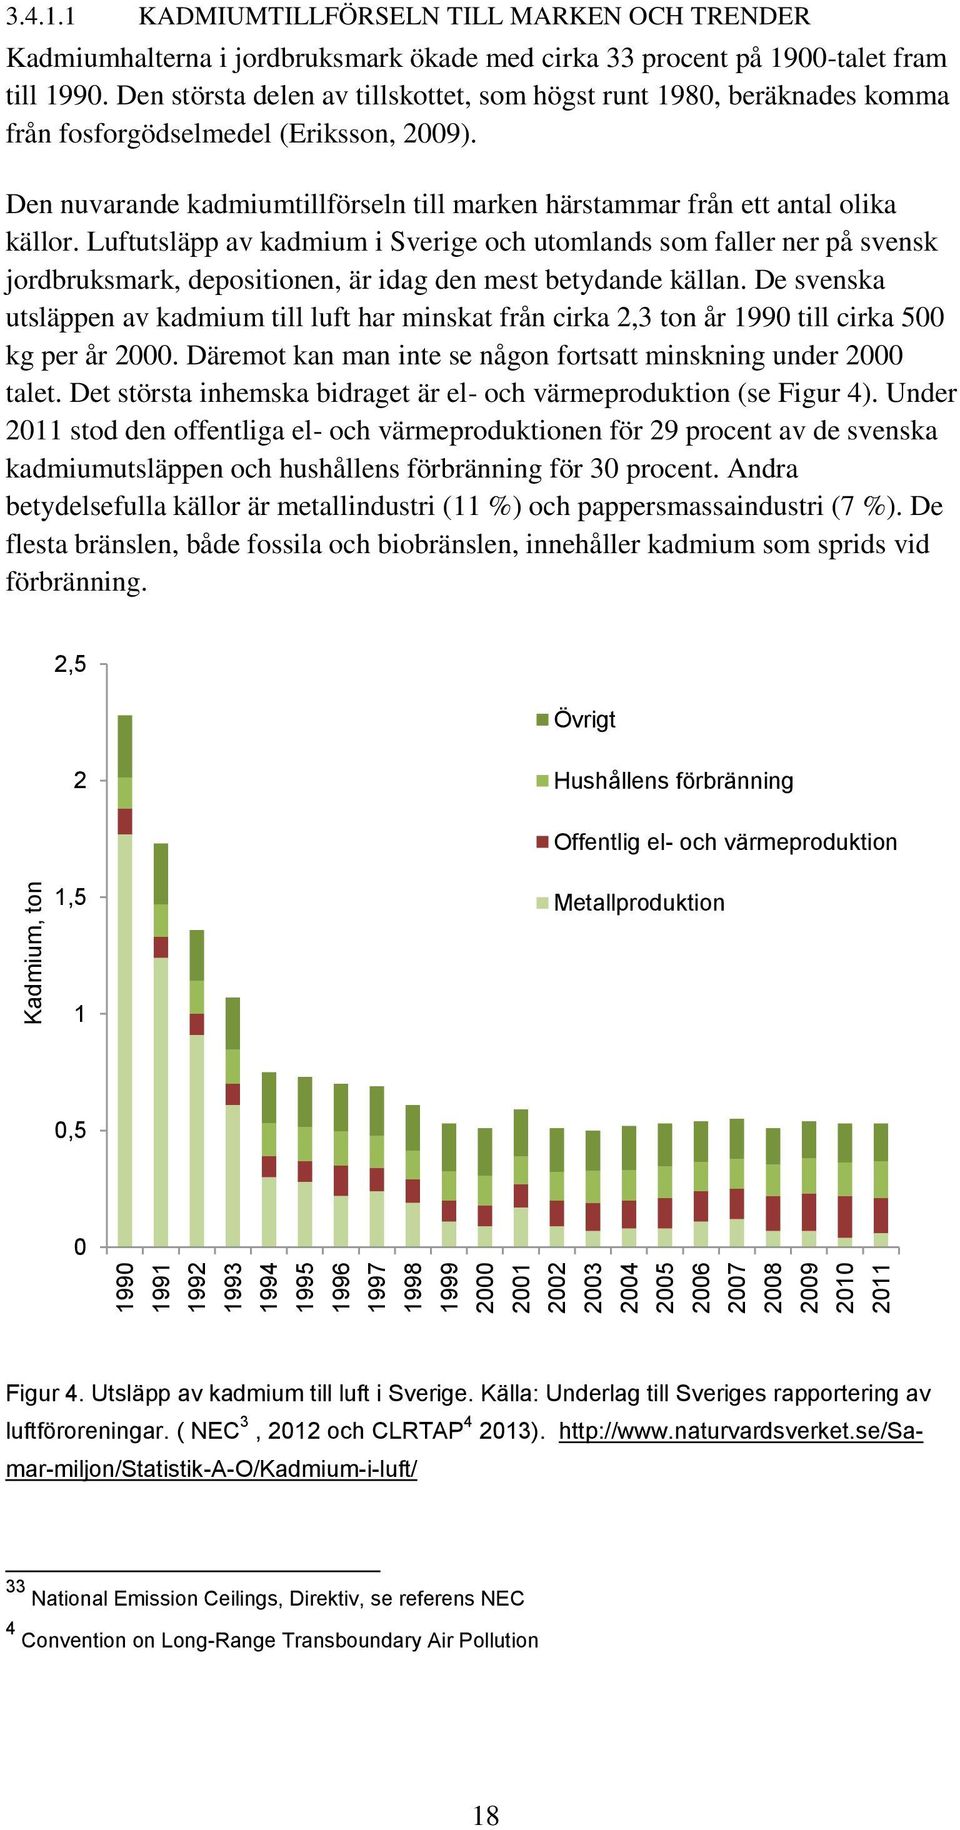 Luftutsläpp av kadmium i Sverige och utomlands som faller ner på svensk jordbruksmark, depositionen, är idag den mest betydande källan.